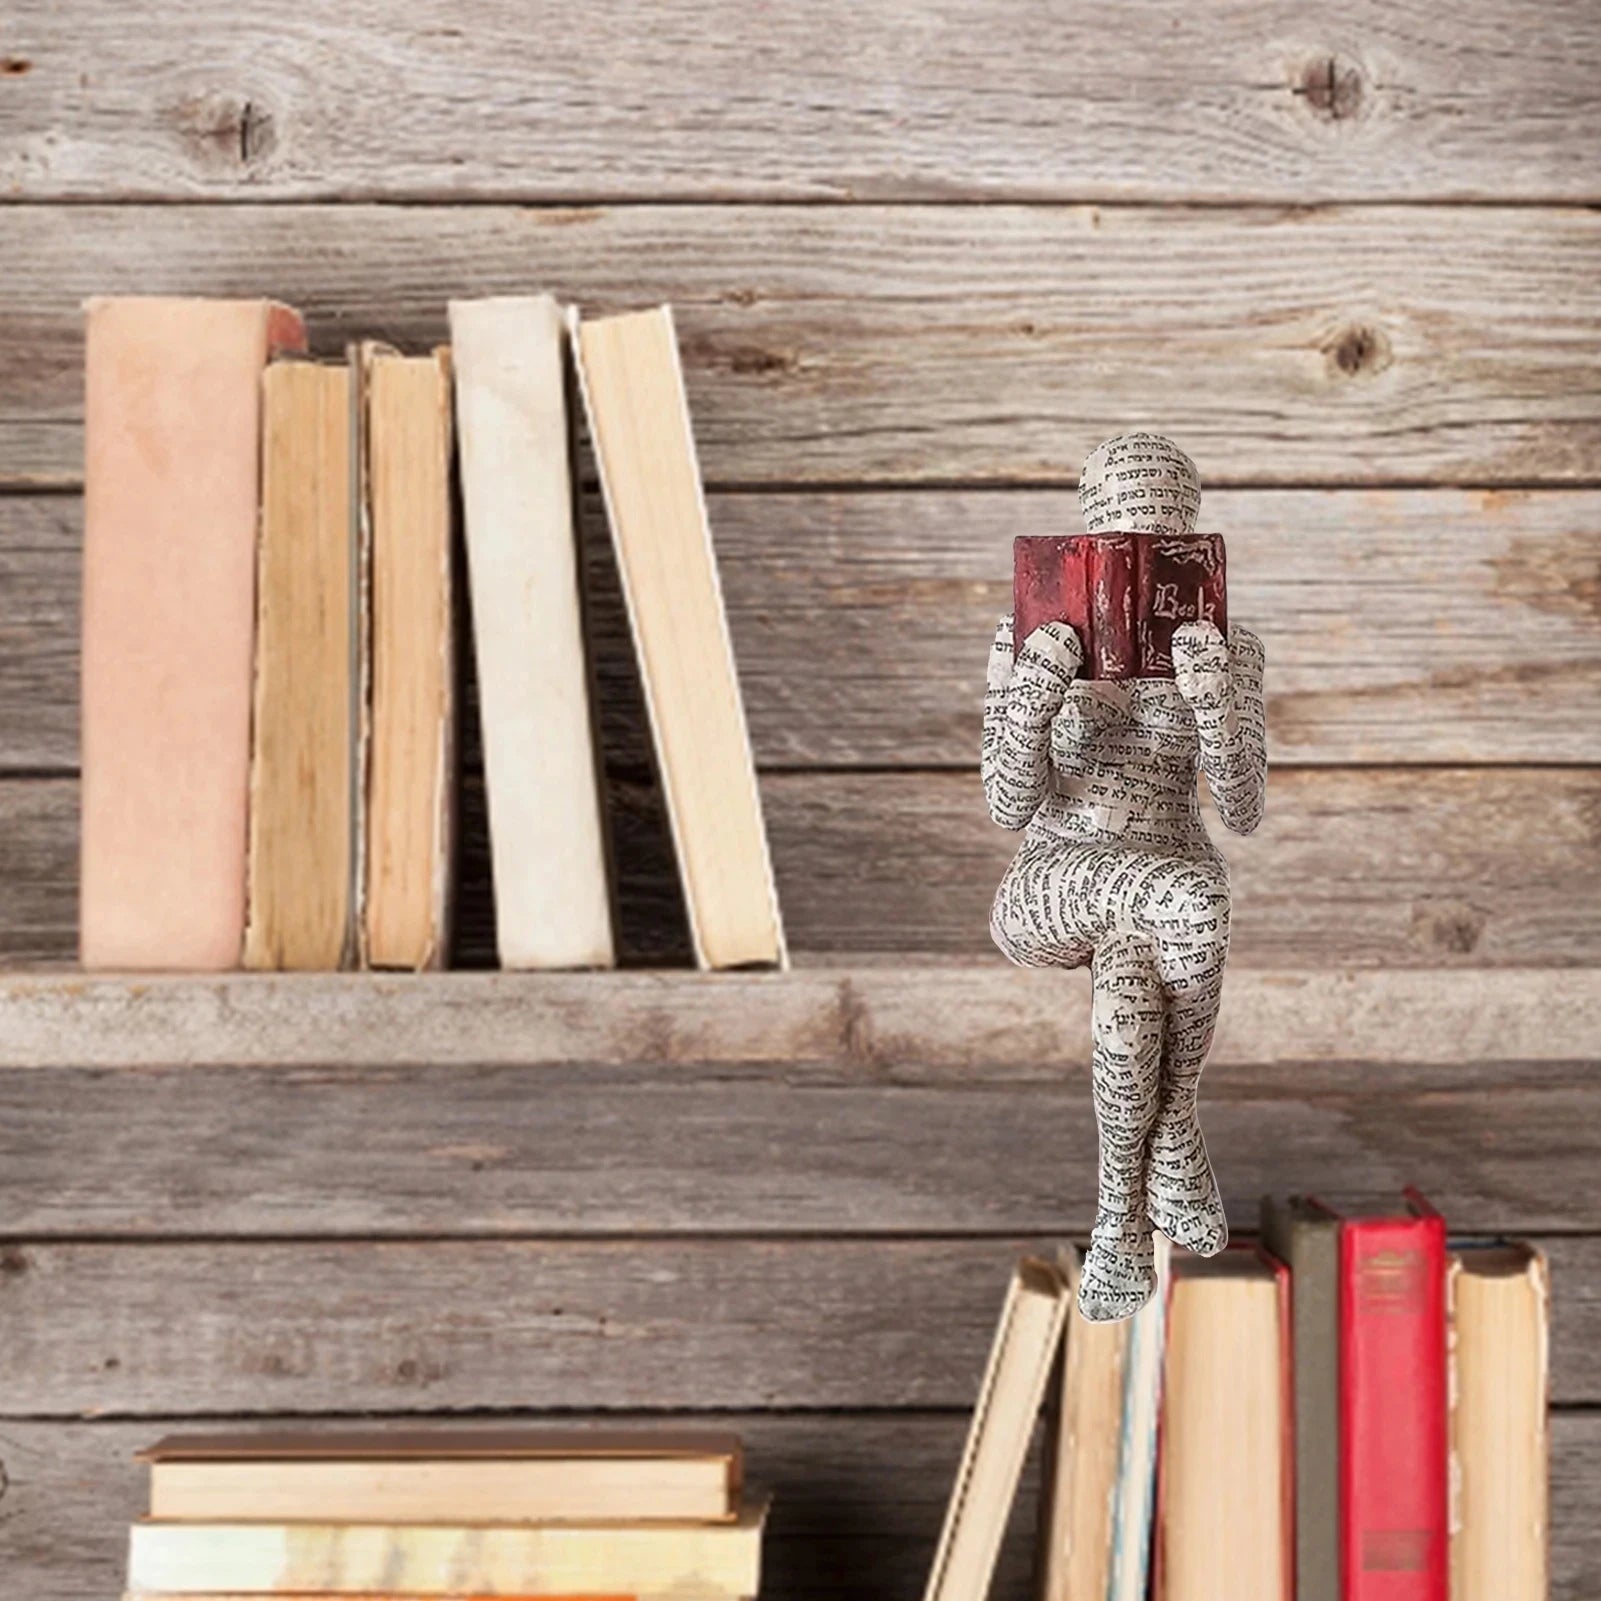 اللب امرأة قراءة كتاب الديكور التأمل نمط المنزل تمثال راتنج مجردة النحت تمثال للديكور المنزل الحديثة قبالة